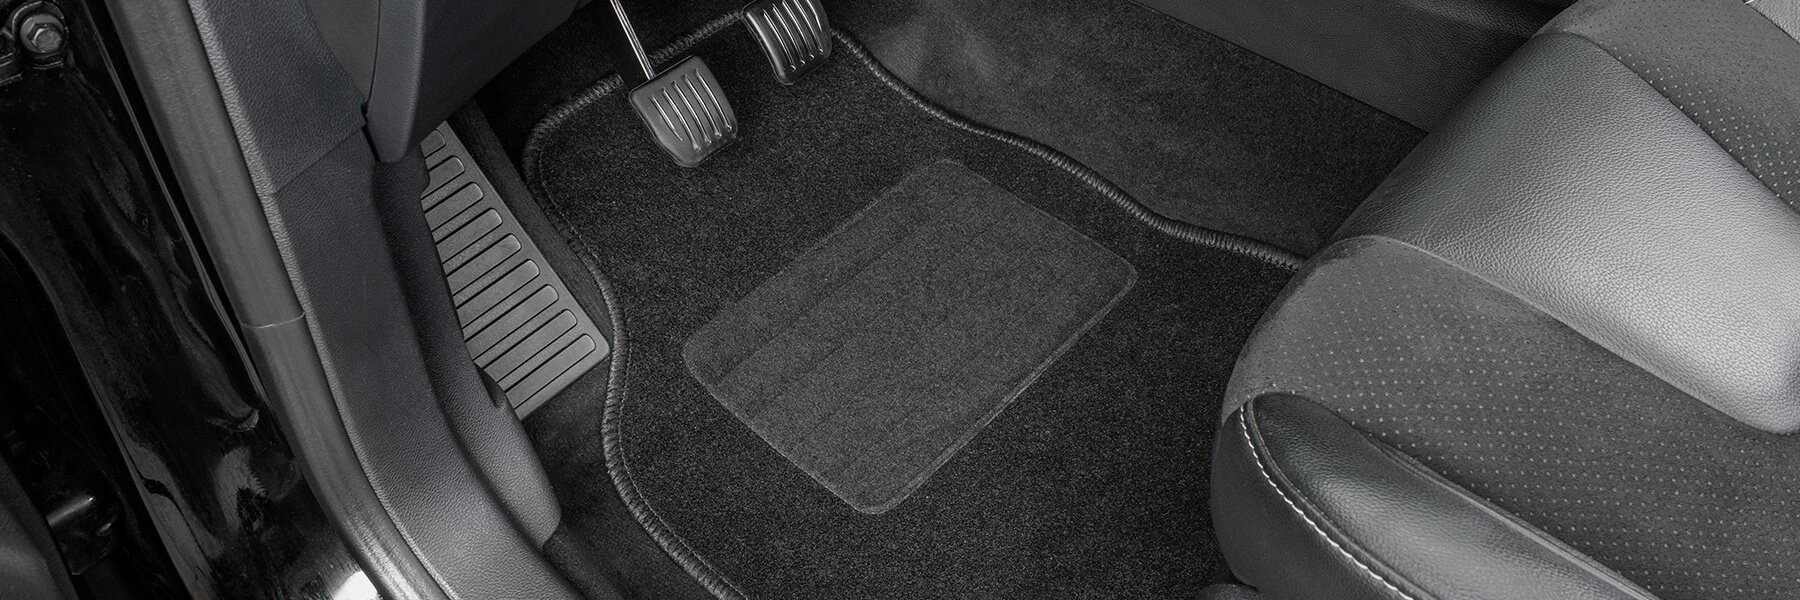 AD Tuning GmbH HG13172 Velours Passform Fußmatten Set Schwarz Autoteppiche Teppiche Carpet Floor mats 